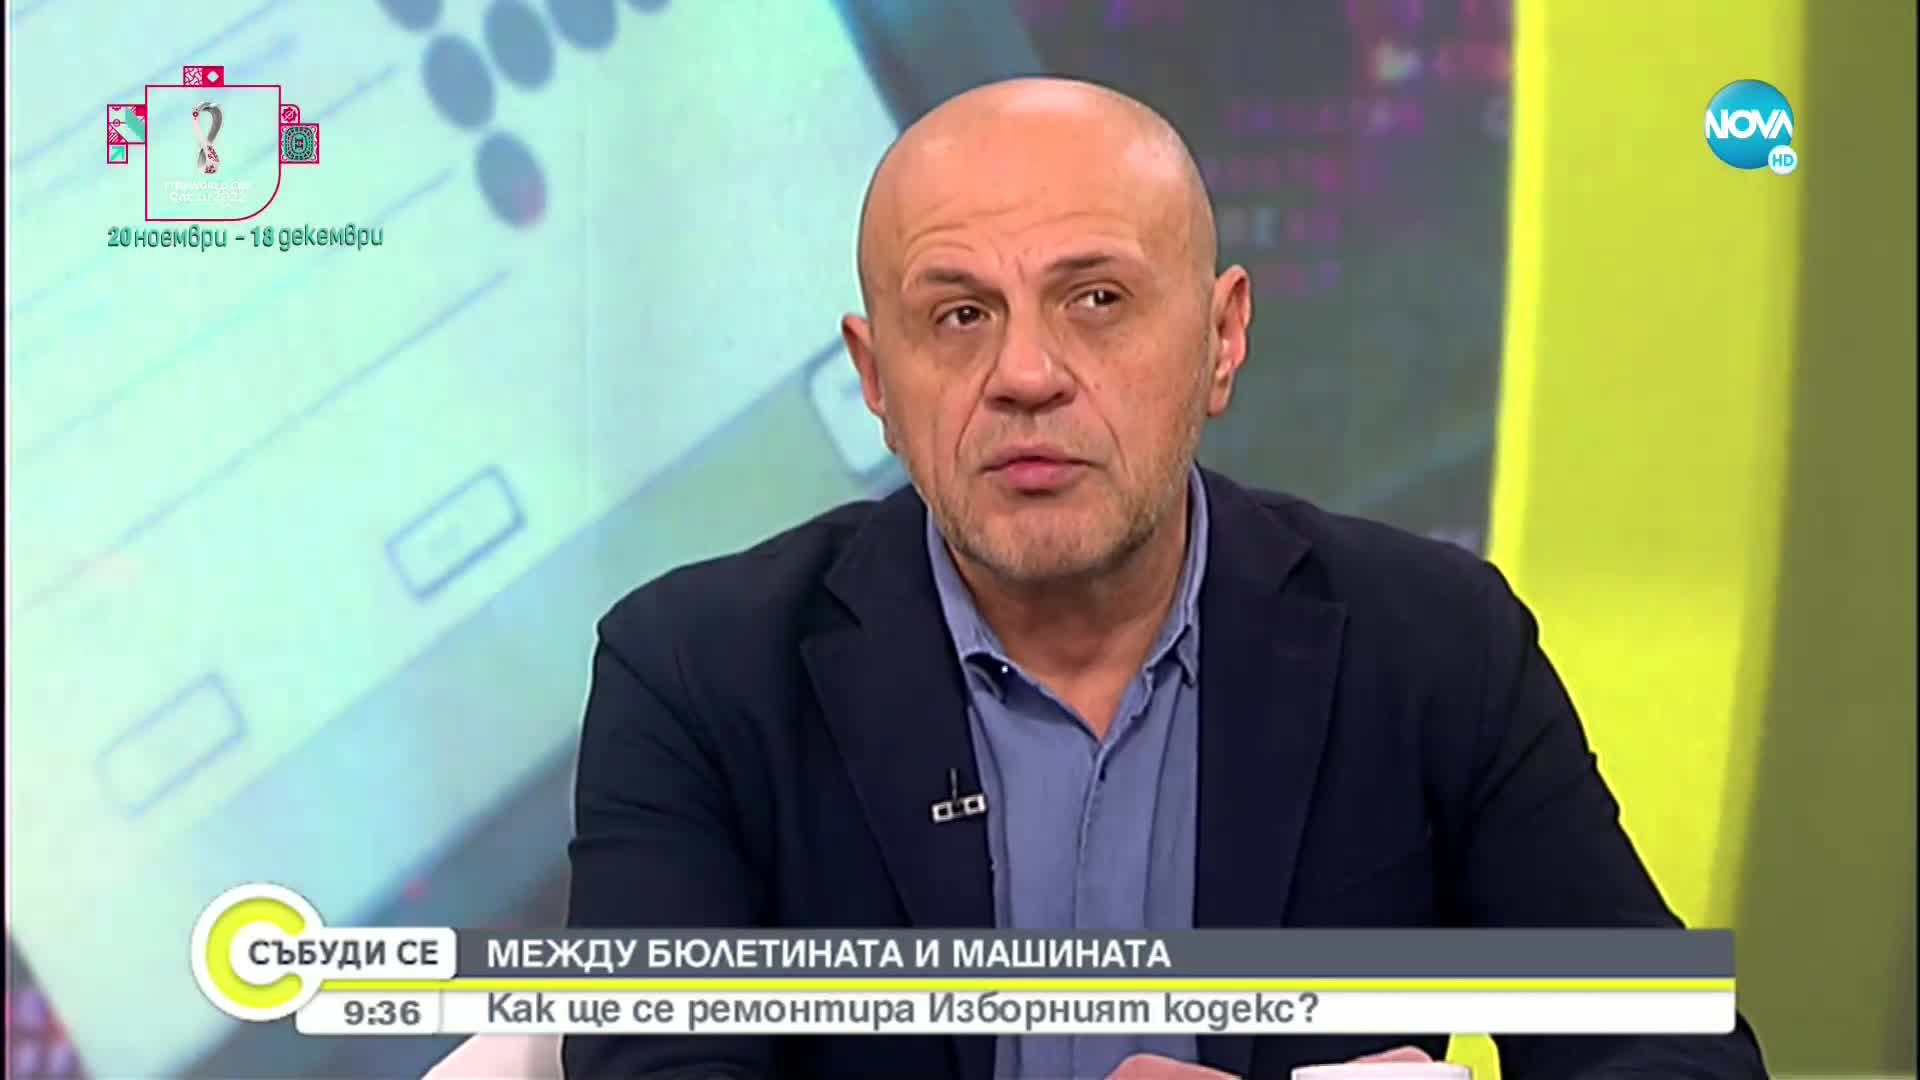 Дончев: Трябва решение, което връща доверието в изборния процес